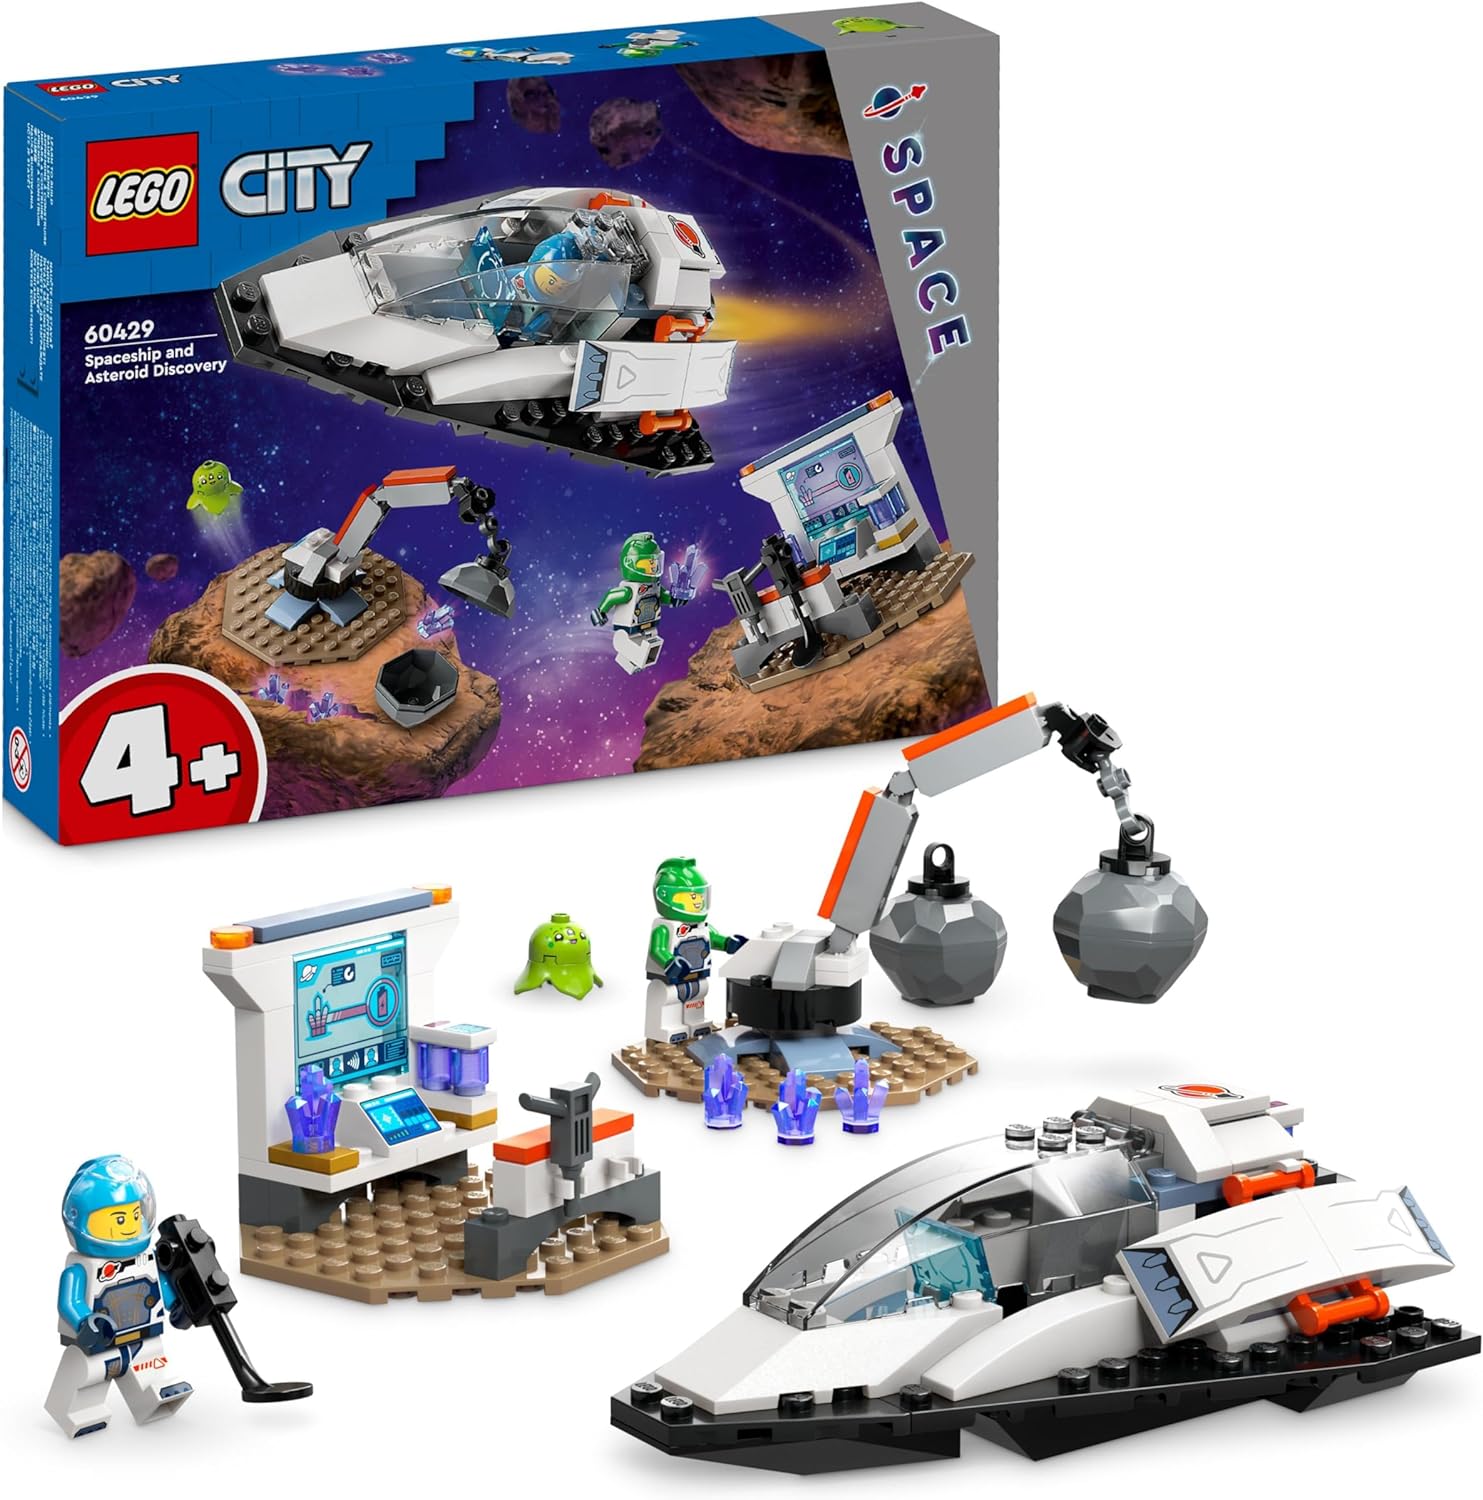 LEGO City Bergung eines Asteroiden im Weltall, Weltraum-Spielzeug mit Raumschiff, Raumstation, 2 Minifiguren und eine Alien-Figur, Geschenk für Kinder, Jungs und Mädchen ab 4 Jahren 60429